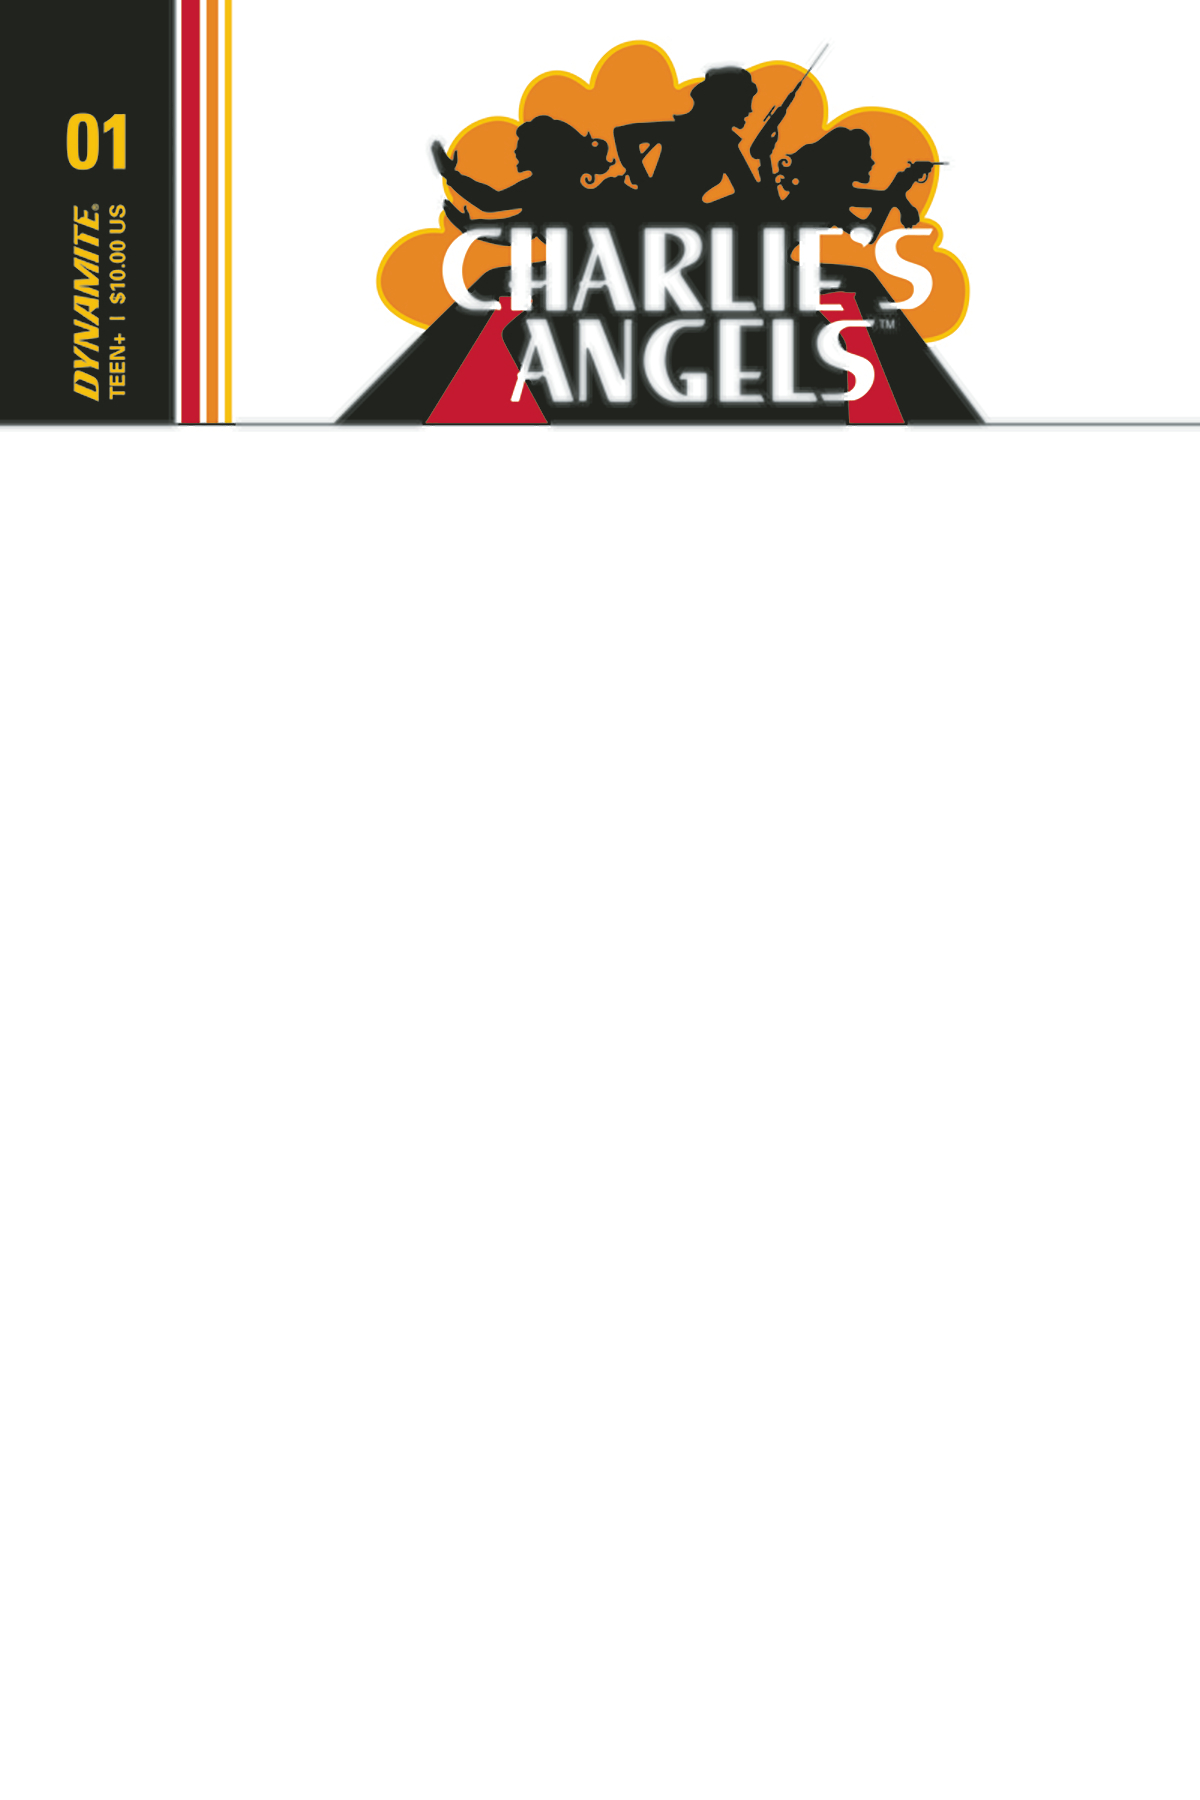 CHARLIES ANGELS #1 50 COPY ARTBOARD EDITIONS INCV SET